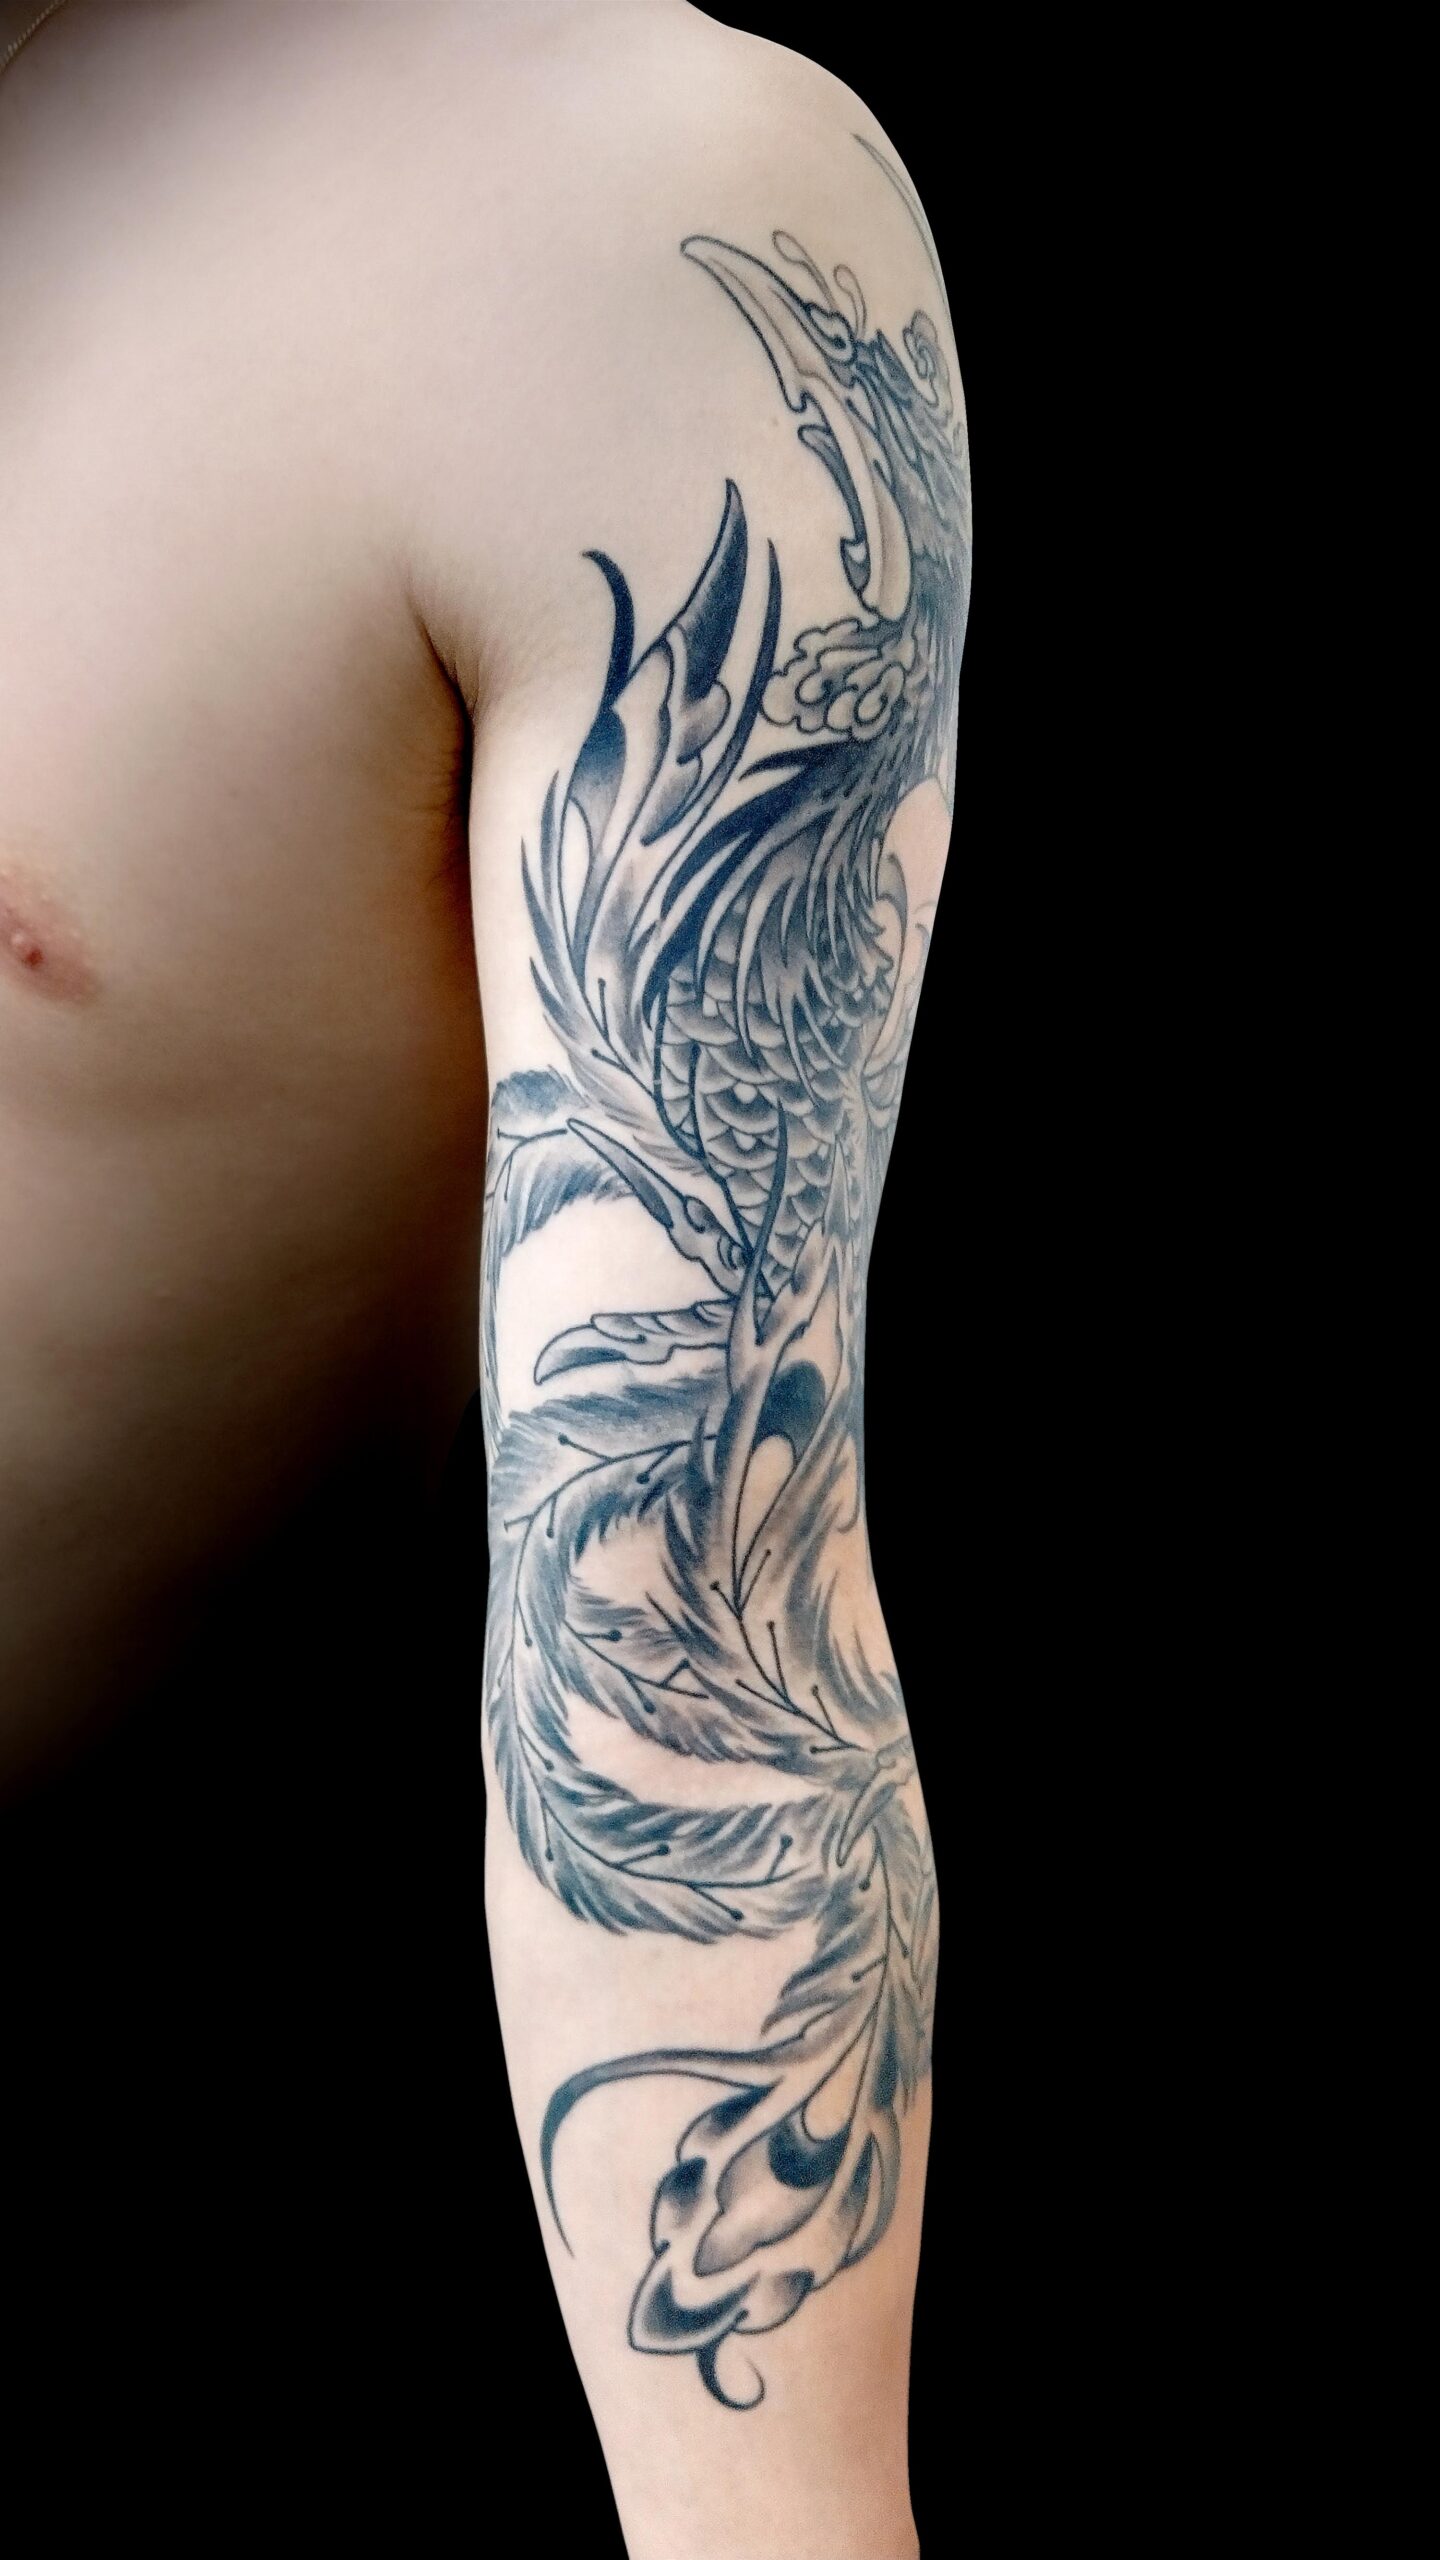 KINGRAT TATTOO 作品 | LAVA gallery | Tattoo artist: Yuji Anai | キングラット | ラバ | 福岡県北九州市 | phoenix01 202107